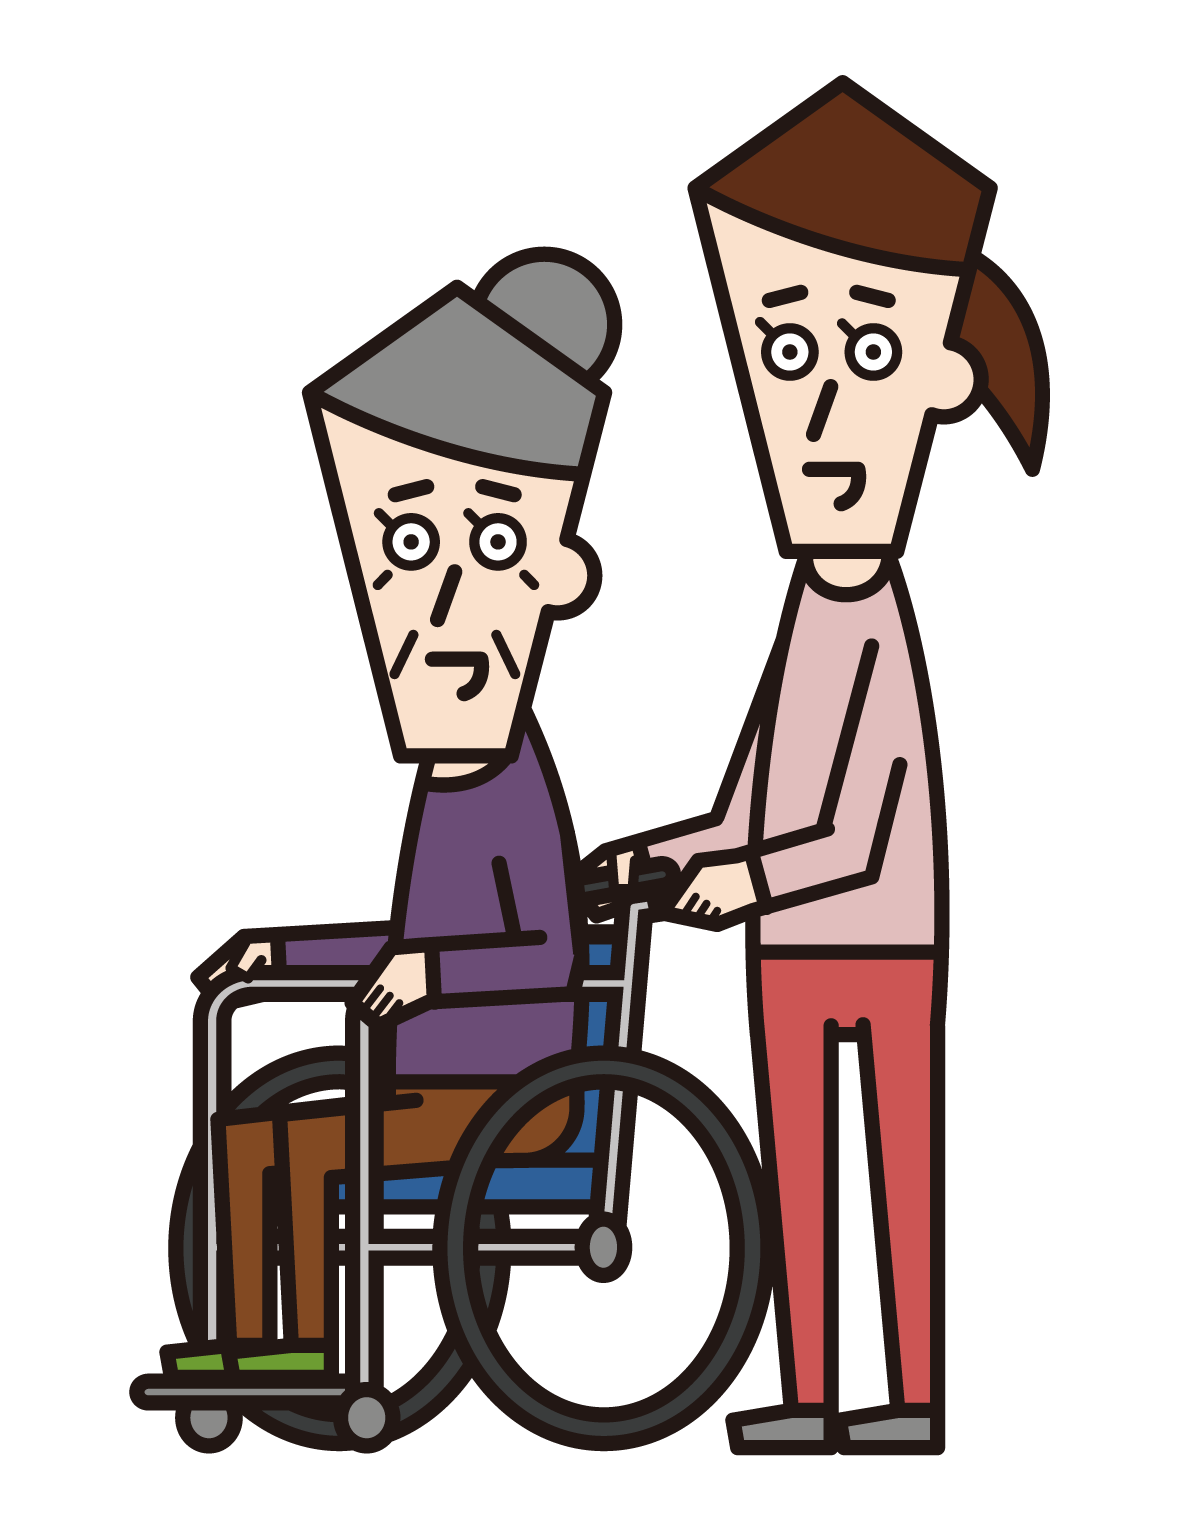 휠체어를 탄 사람(할머니)과 푸셔(여성)의 그림